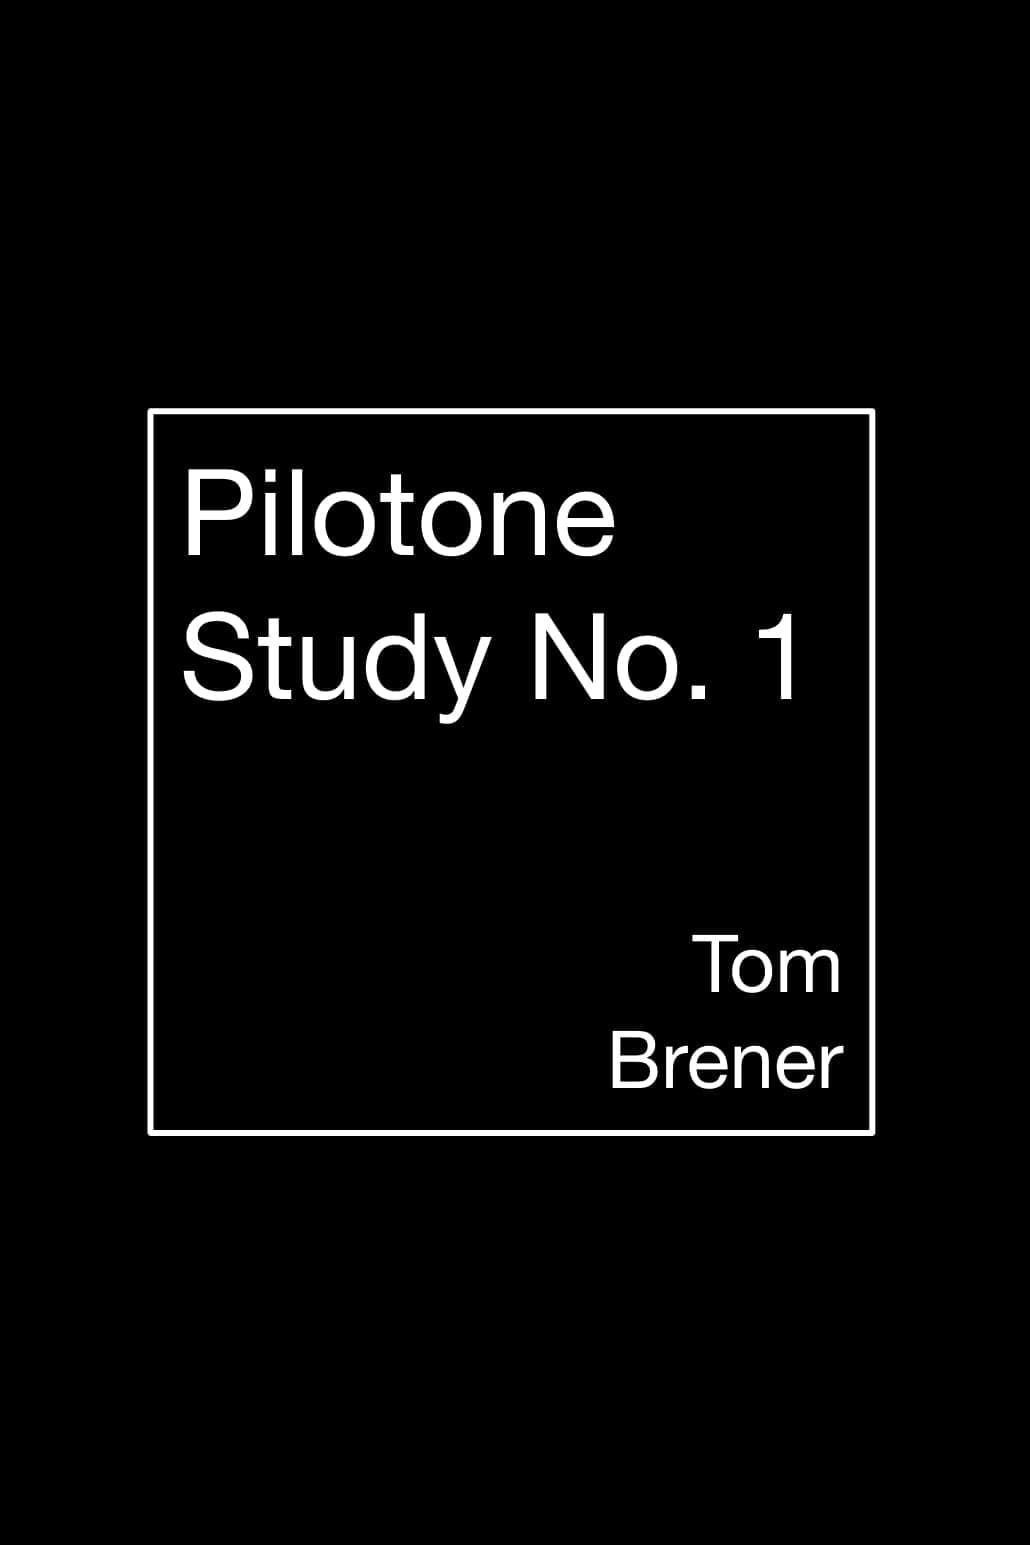 Pilotone Study No. 1